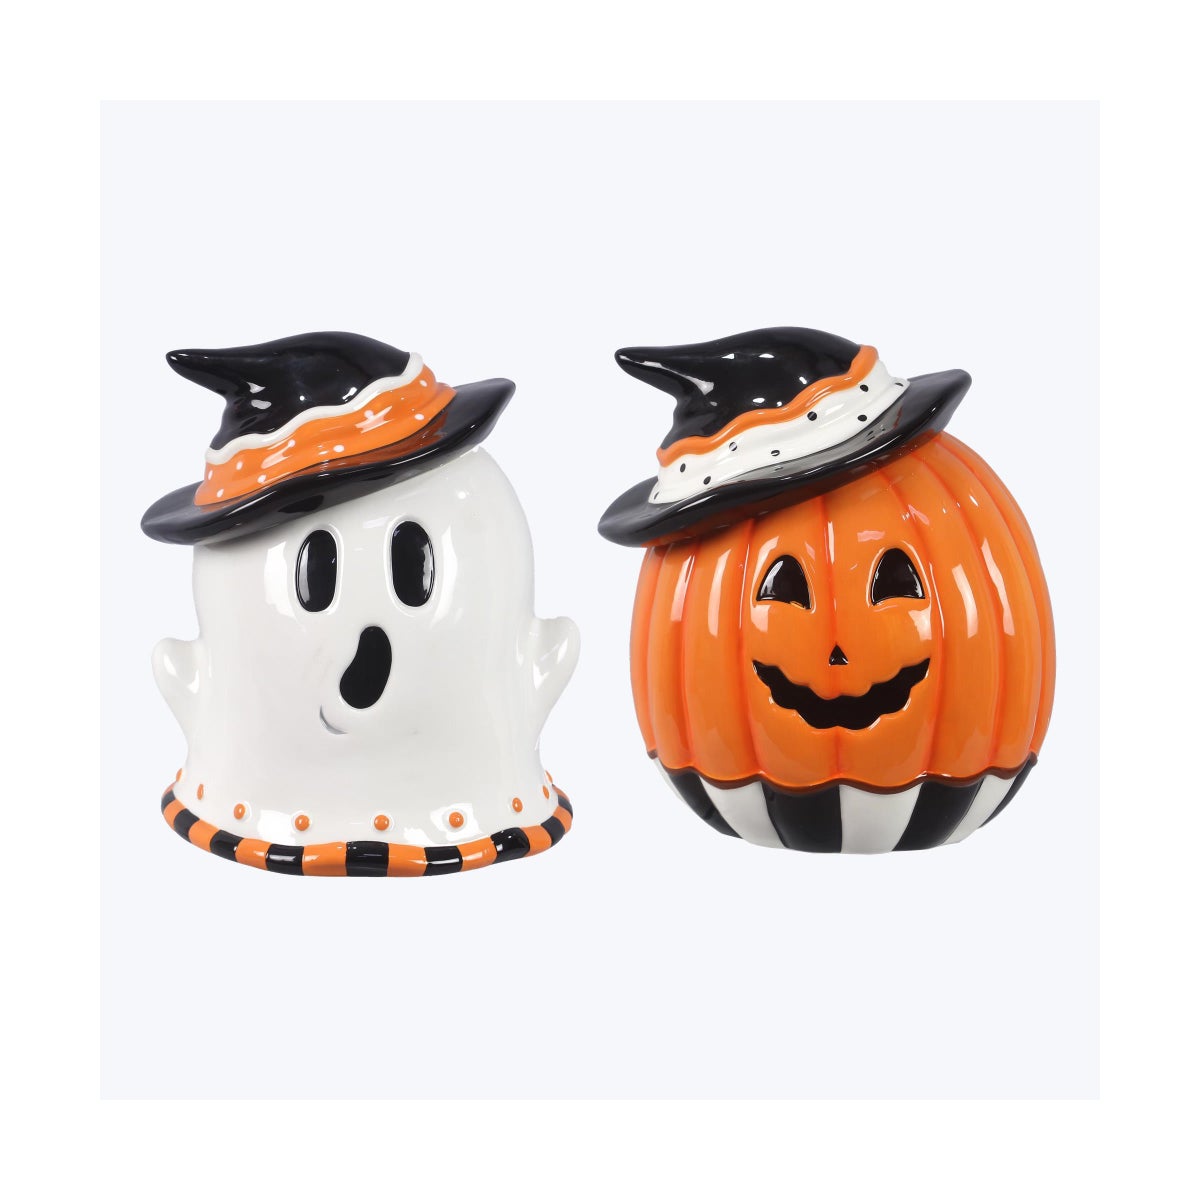 Ceramic Halloween Pumpkin/Ghost Goodie Jar, 2 Ast